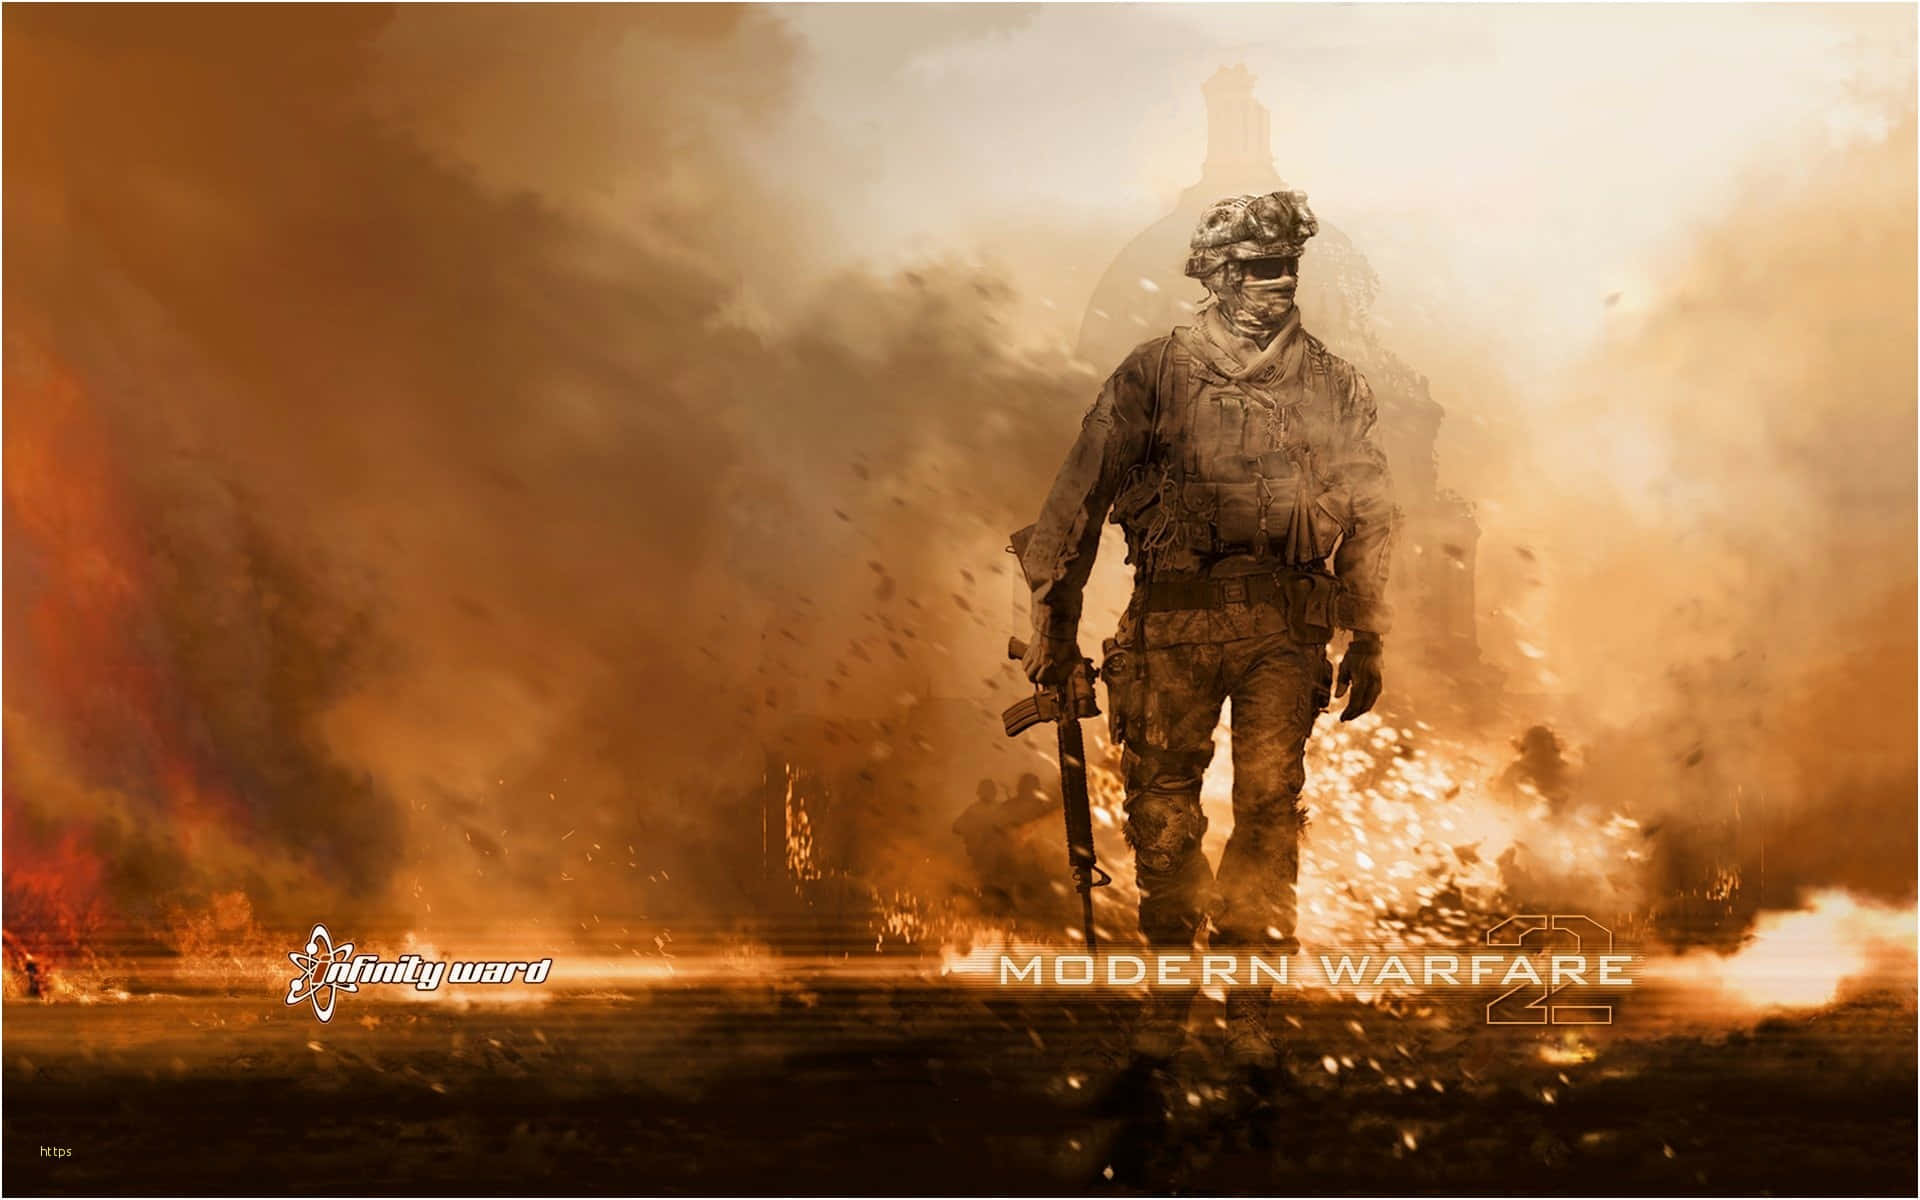 An intense battle awaits in Call of Duty Modern Warfare Wallpaper